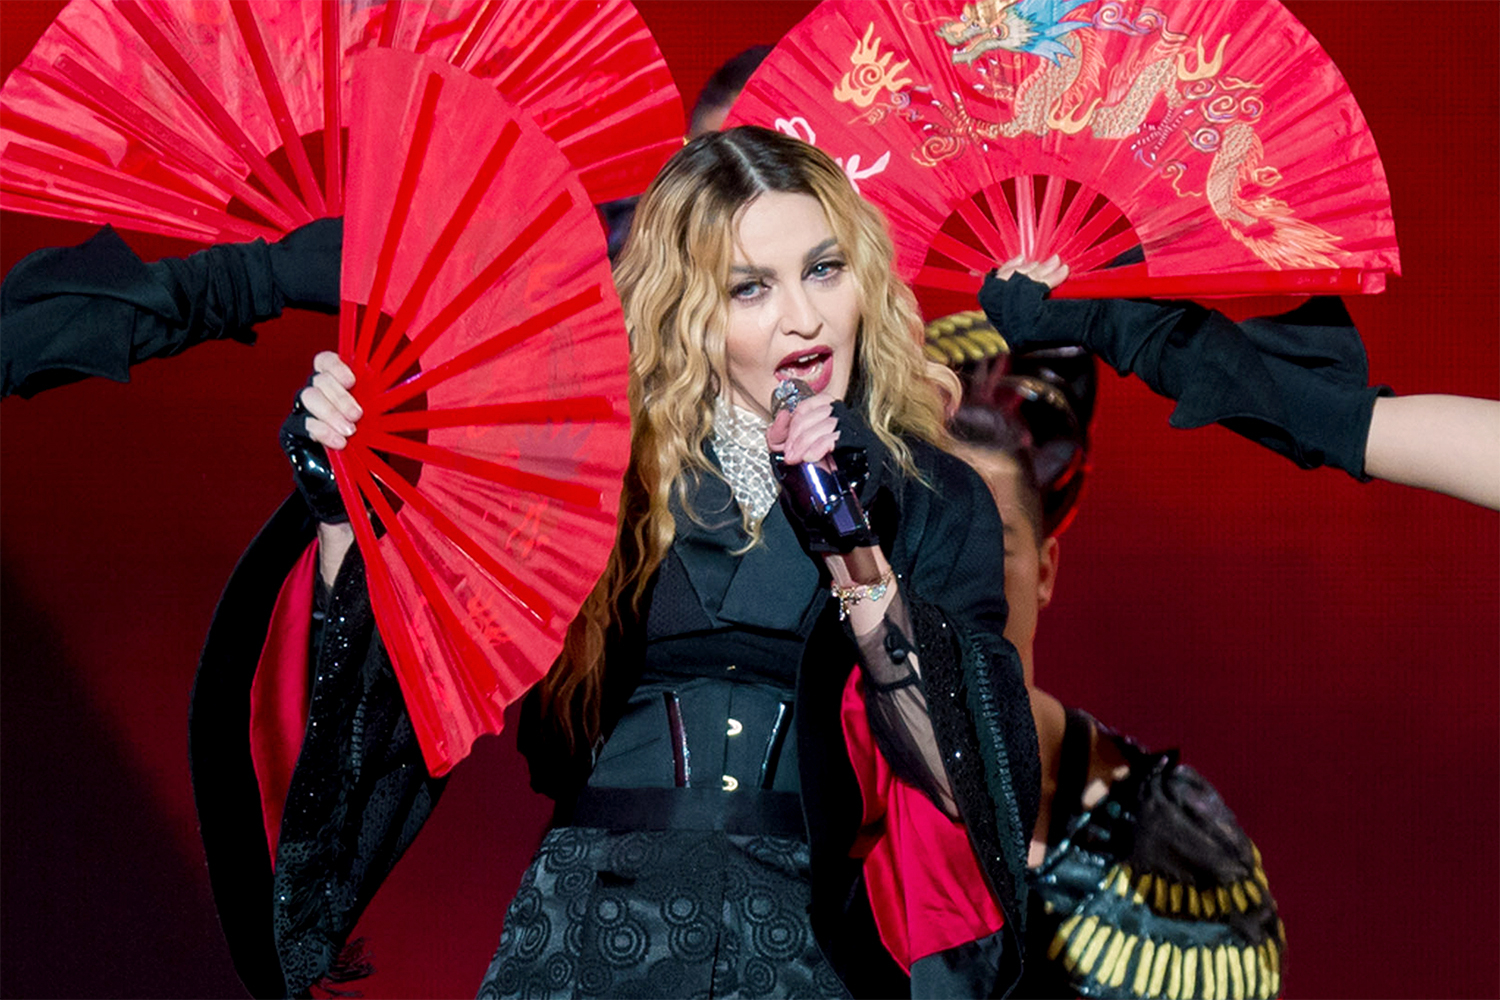 Lauren Urstadt accessories design for Madonna Rebel Tour